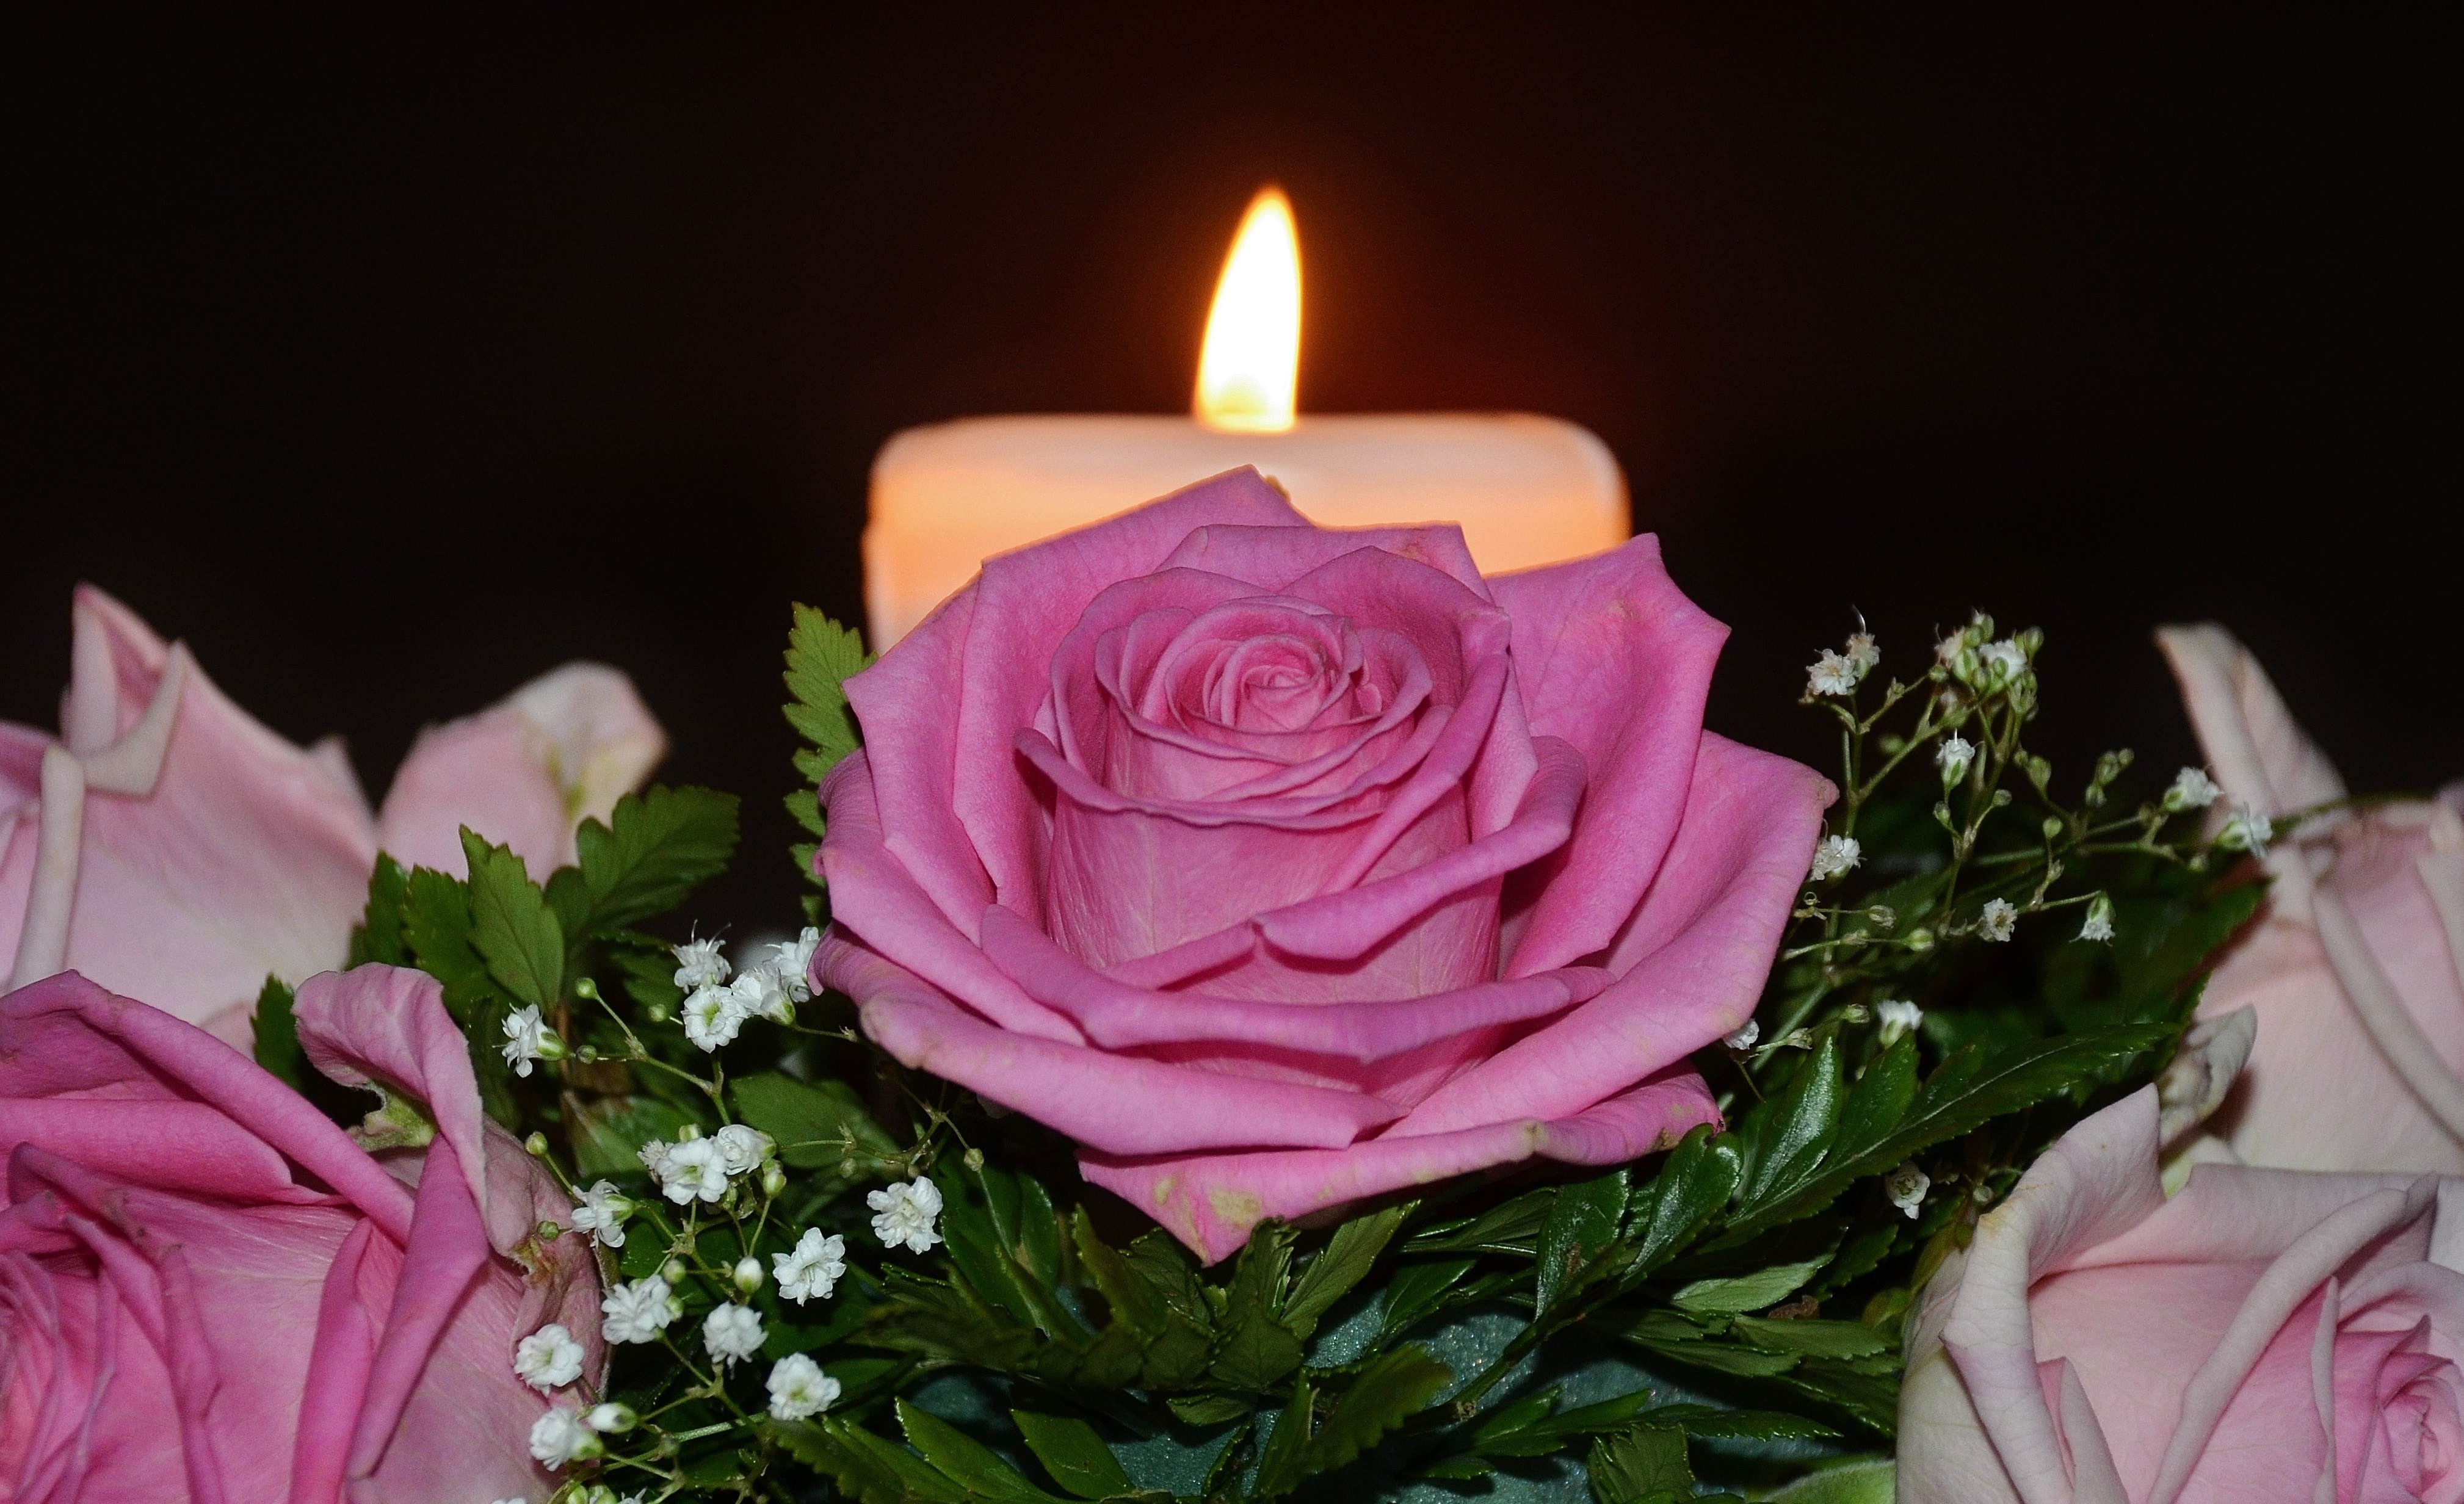 1920x1080 wallpaper | pink rose near white pillar candle | Peakpx